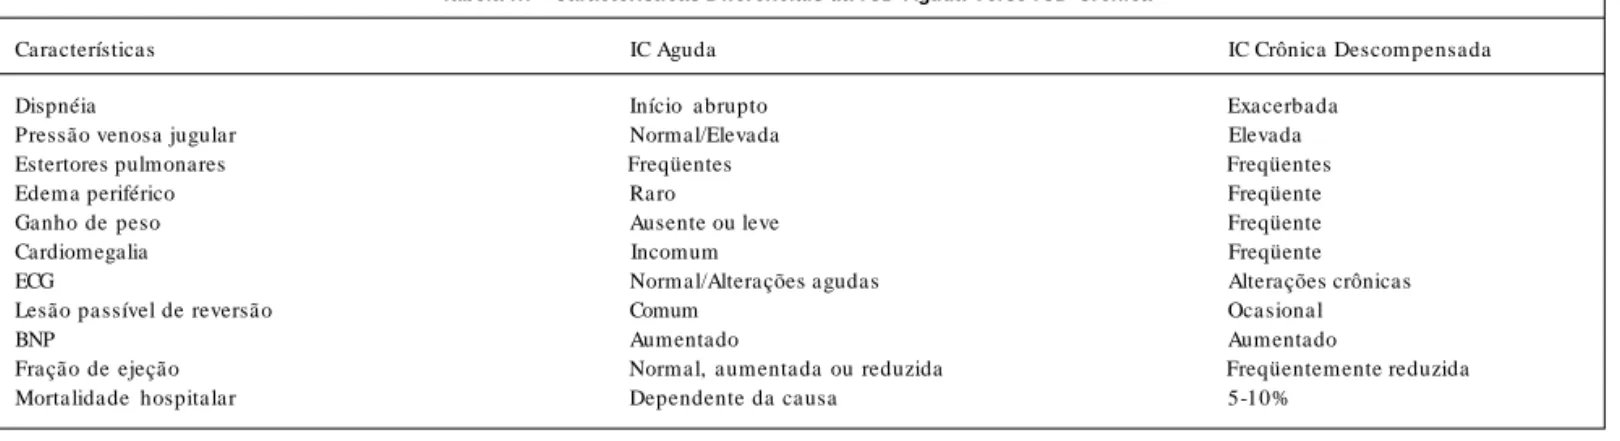 Tabela III - Características Diferenciais da ICD Aguda Verso ICD Crônica